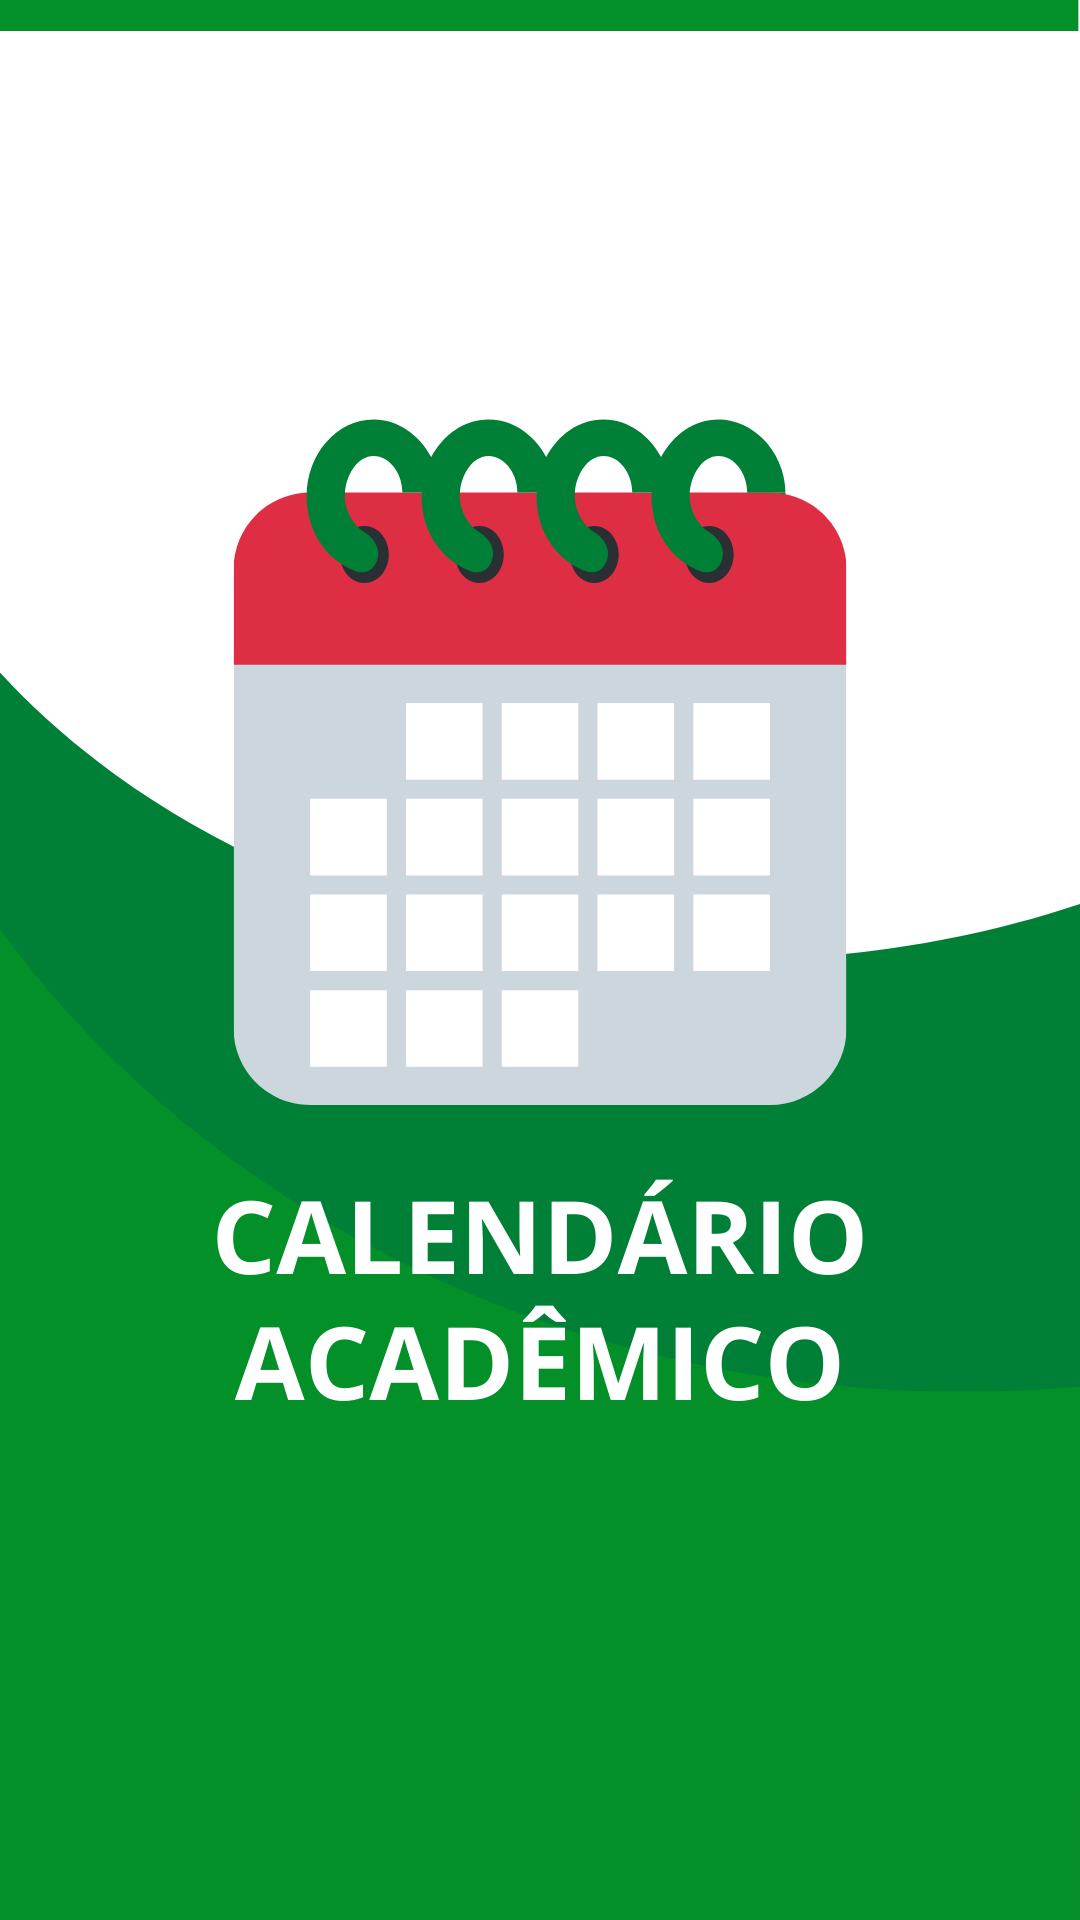 Calendario_Academico_destaque.2e16d0ba.fill-1080x1920